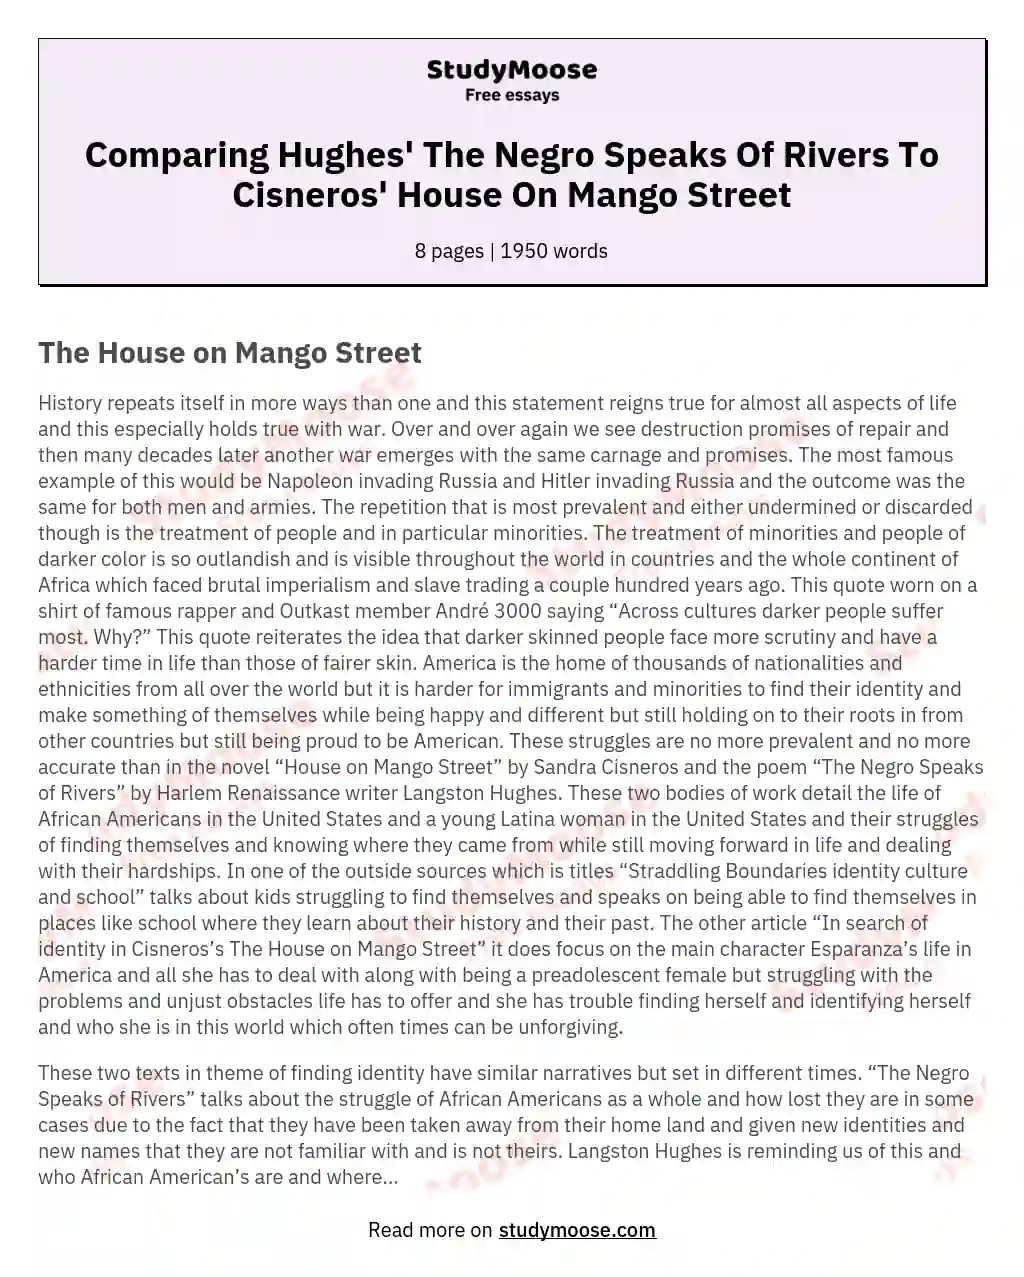 langston hughes the negro speaks of river